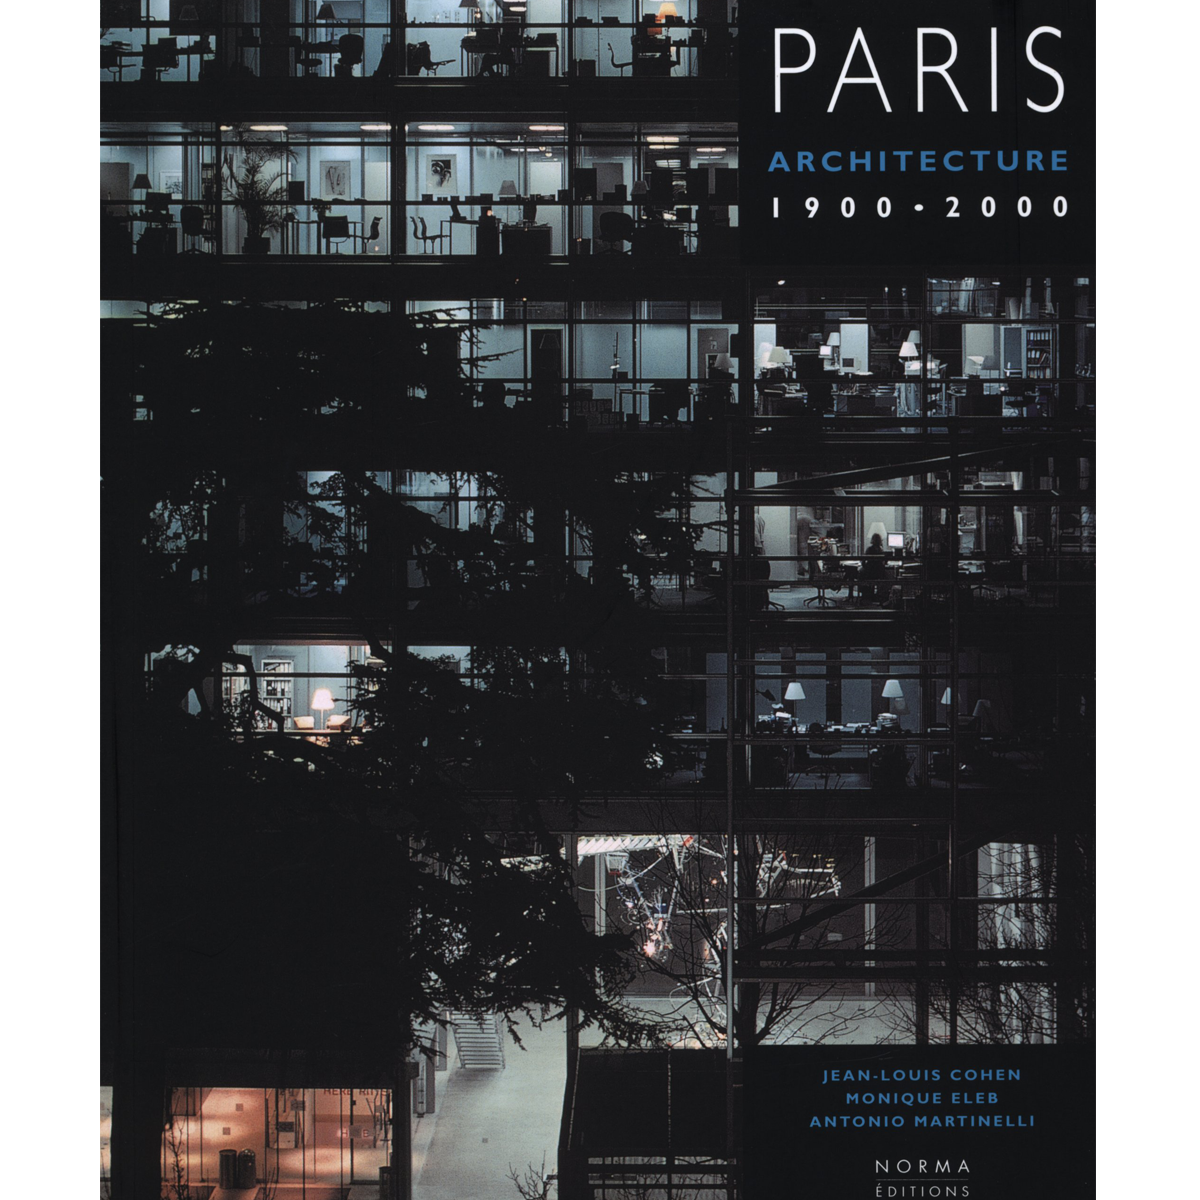 Paris: Architecture 1900-2000